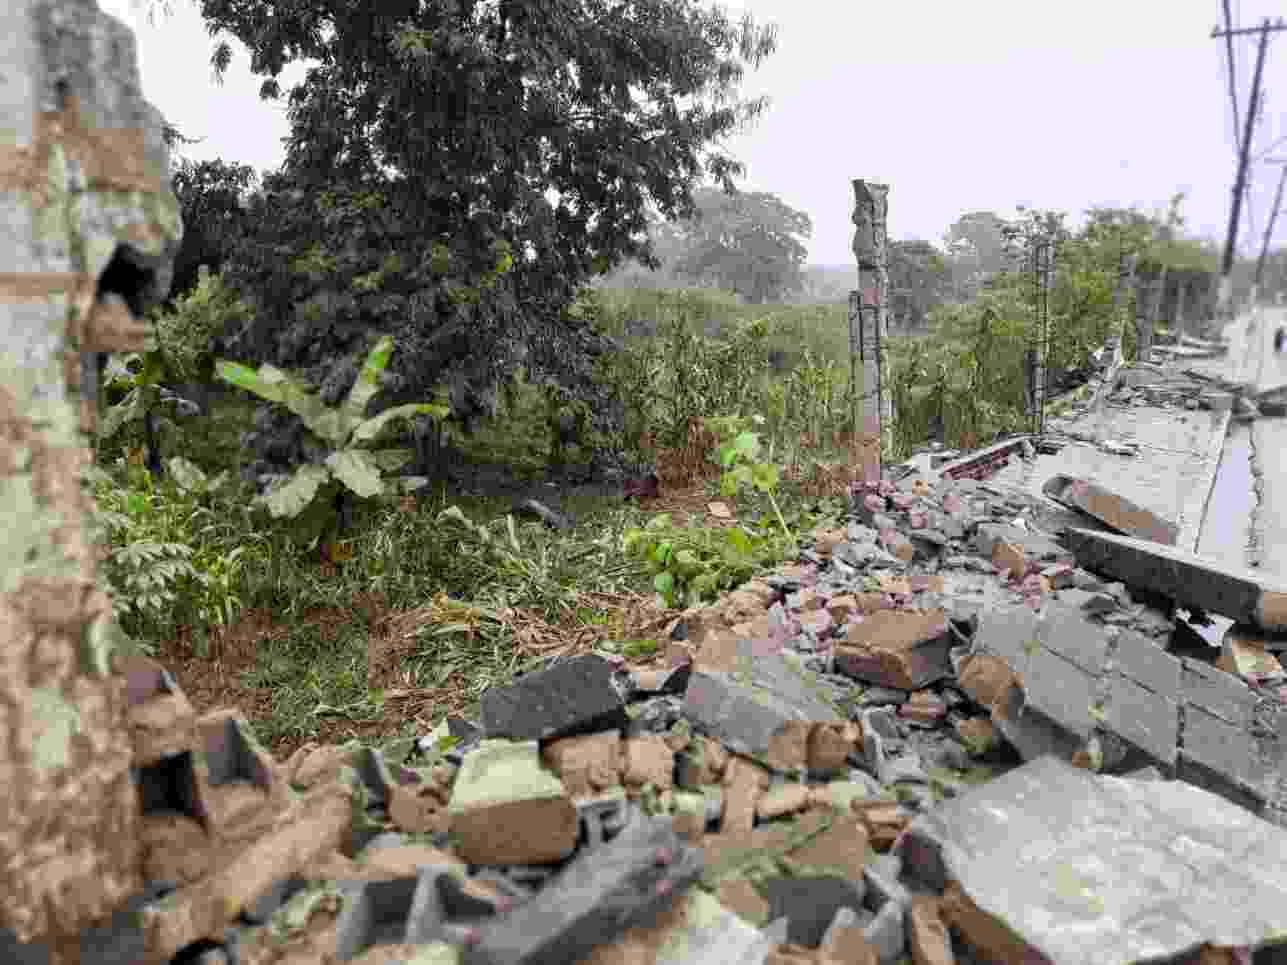 Muro da empresa ficou destruído e outra parte comprometida | © Johny Lucena 